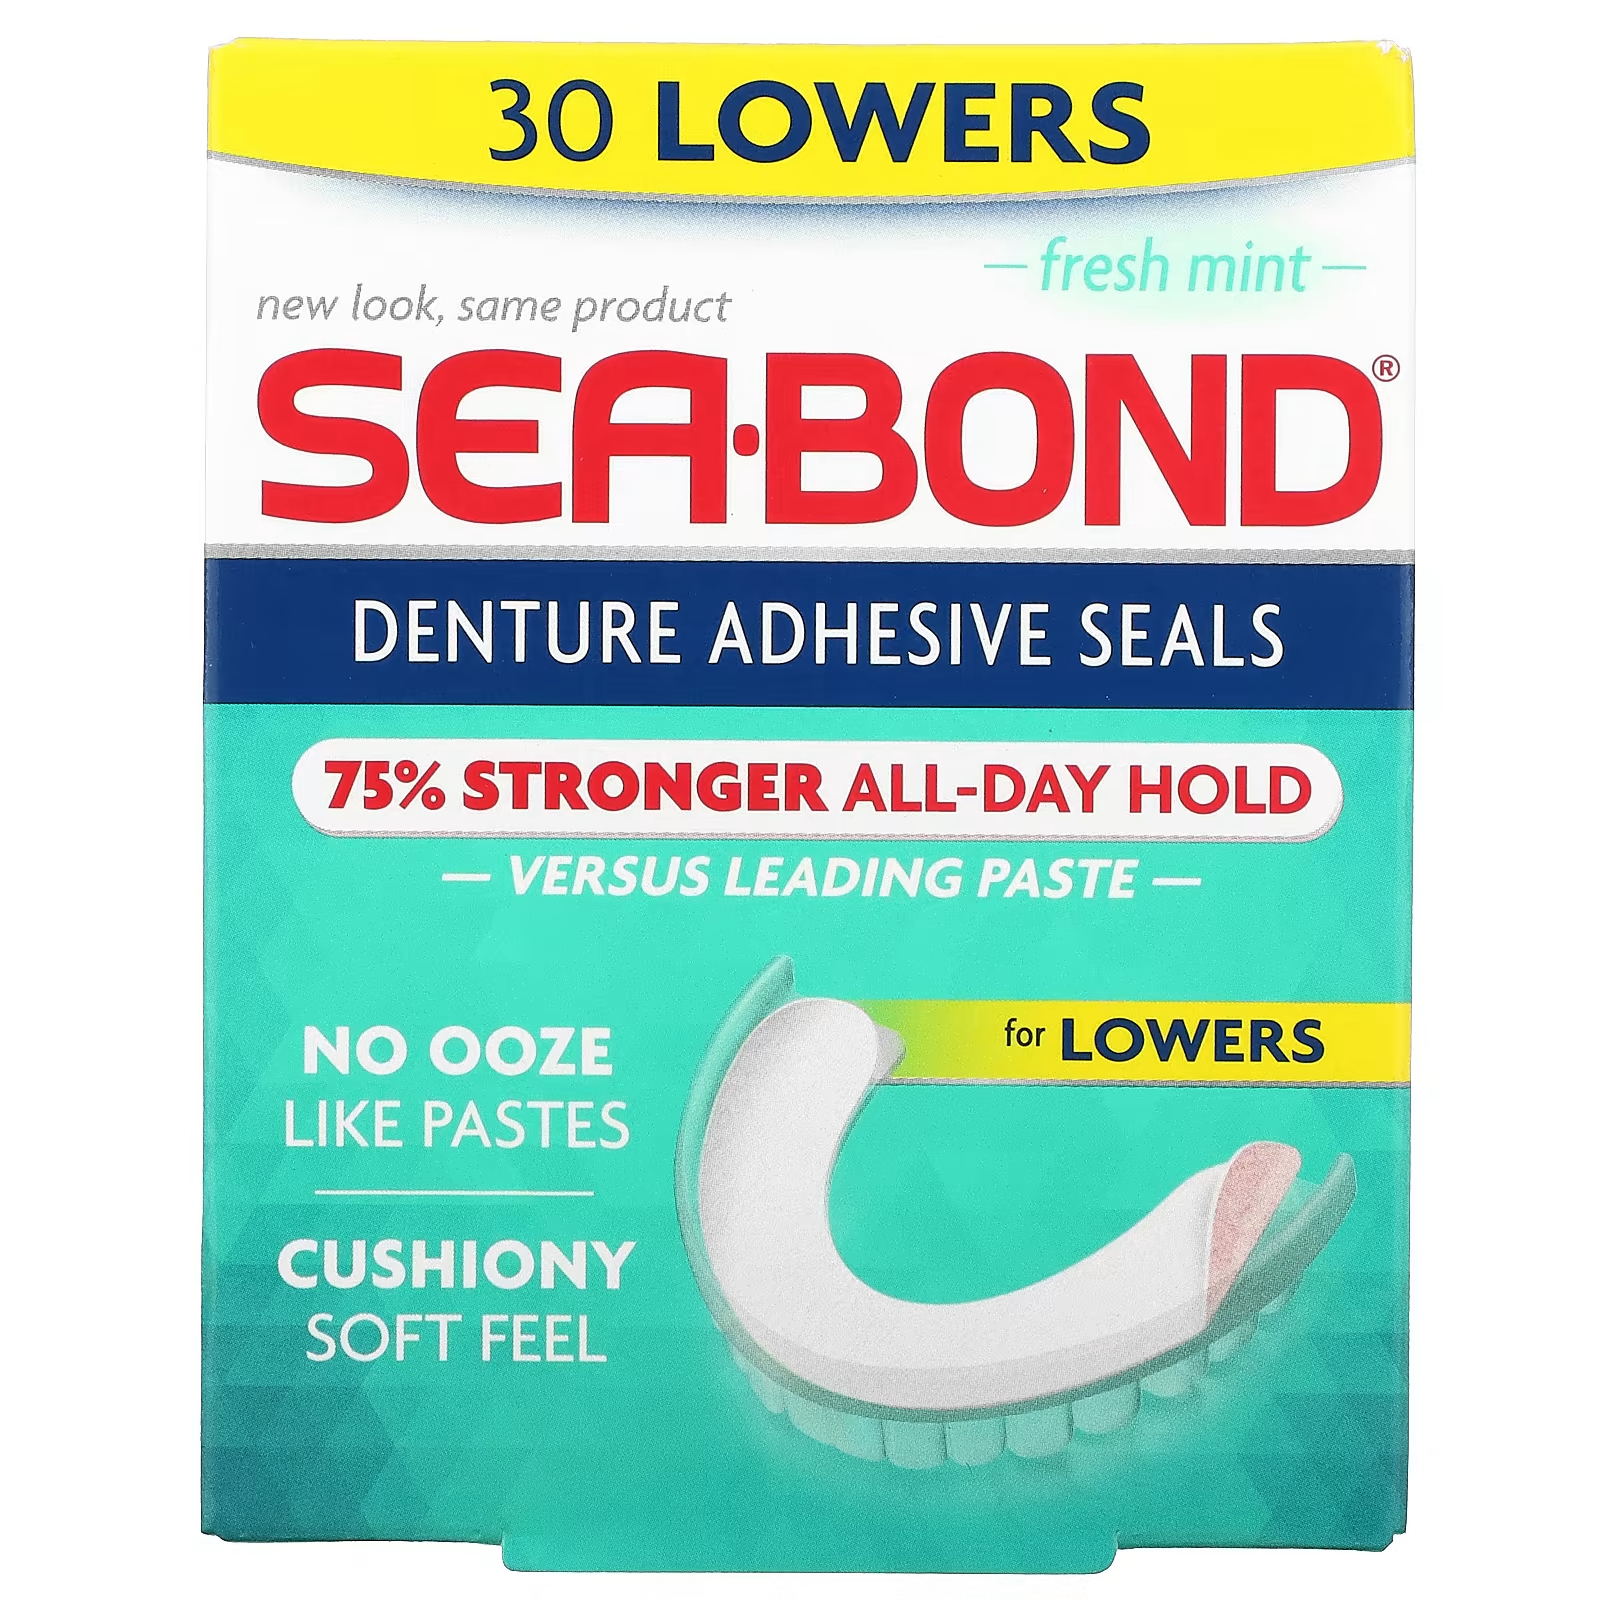 Клей Fresh Mint 30 SeaBond для зубных протезов y kelin клейкий крем для зубных протезов 10 г 0 4 унций размер образца в течение всего дня формула без цинка клей для ложных зубов